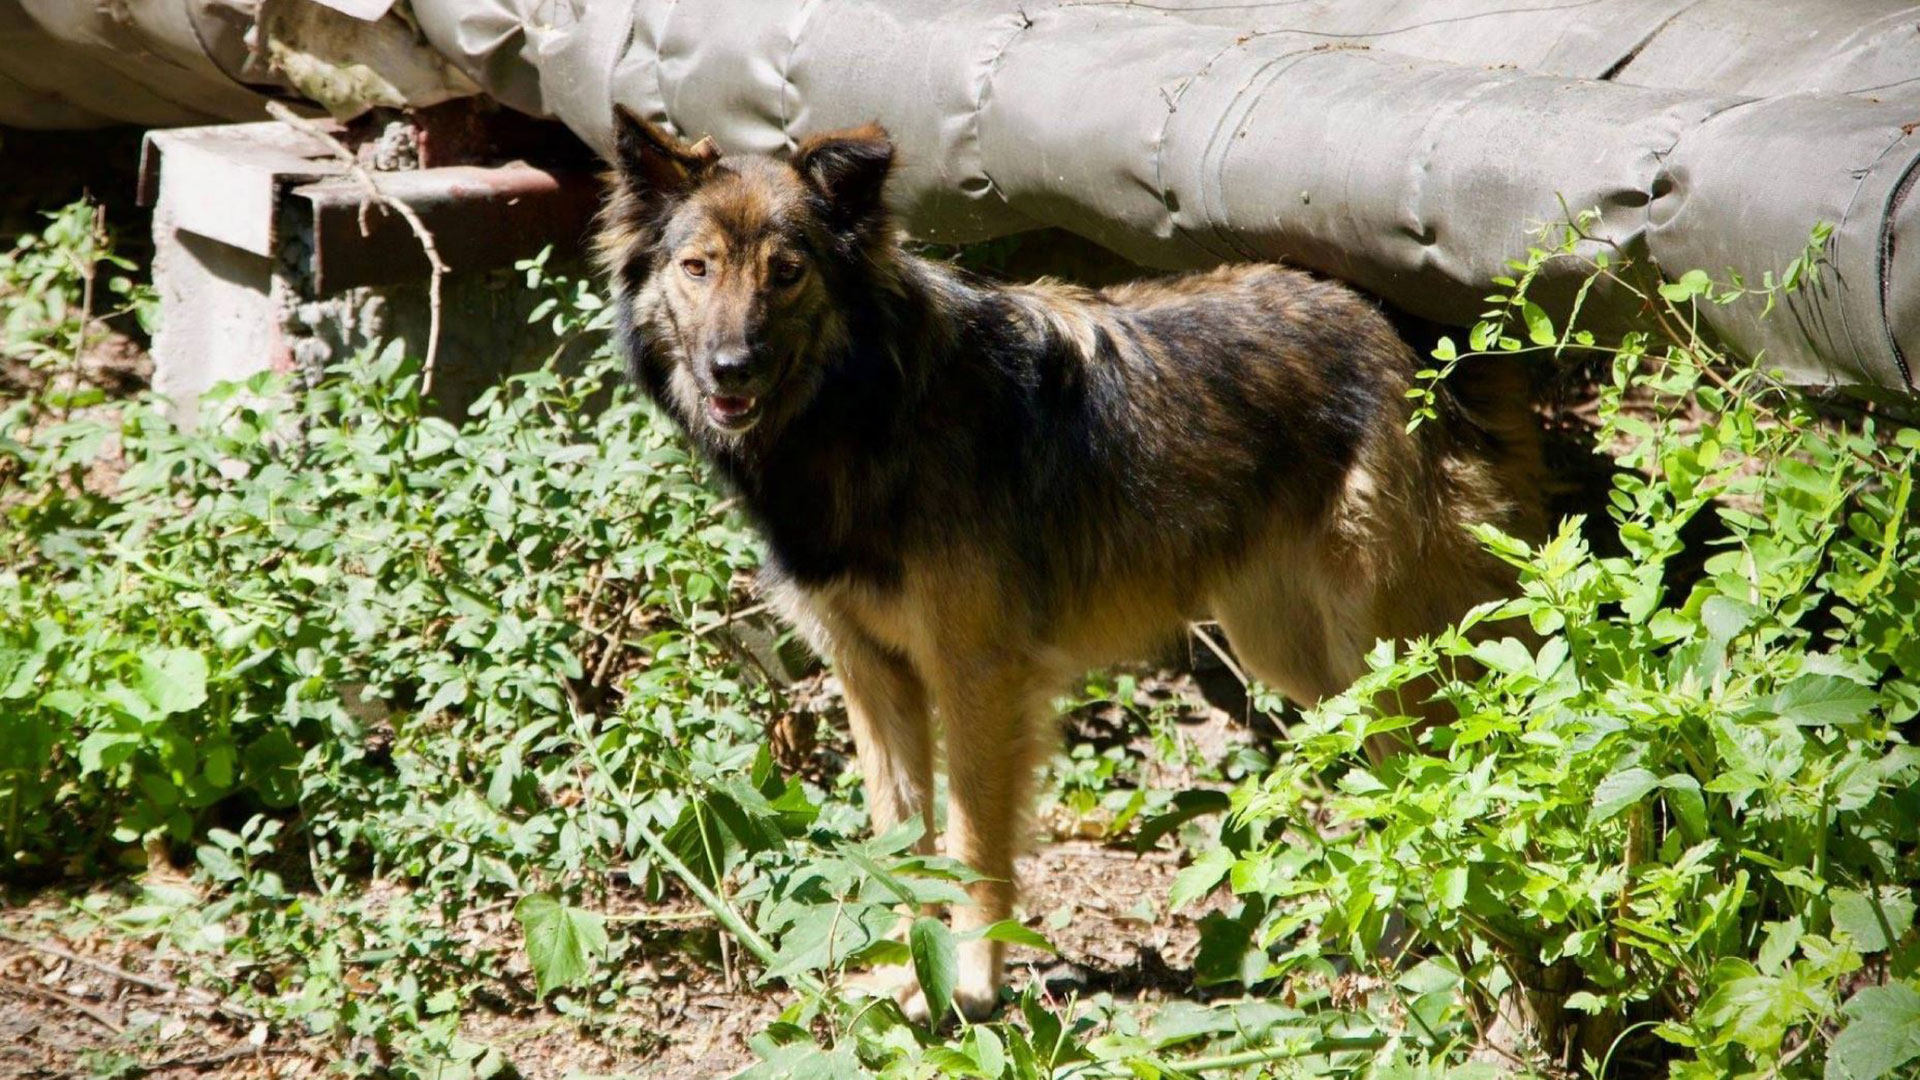 Muchos de los perros de Chernobyl encuentran refugio en edificios abandonados o zonas en construcción dentro de la zona de exclusión nuclear EFE/Jordan Lapier